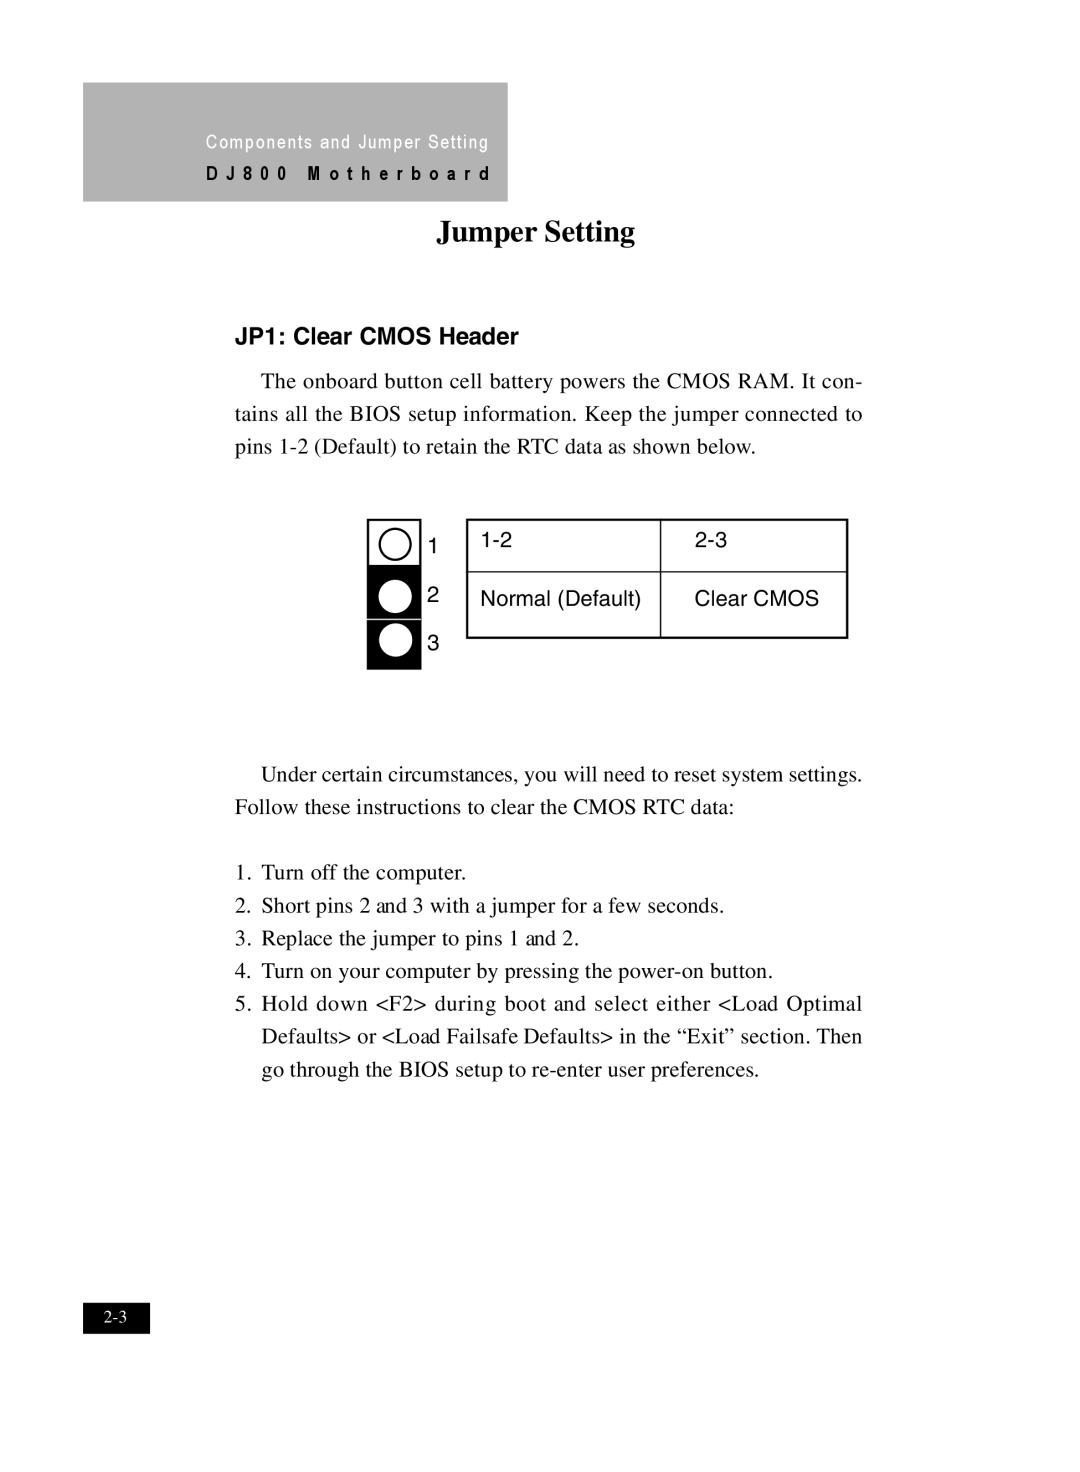 IBM DJ800 user manual JP1 Clear CMOS Header, Jumper Setting 